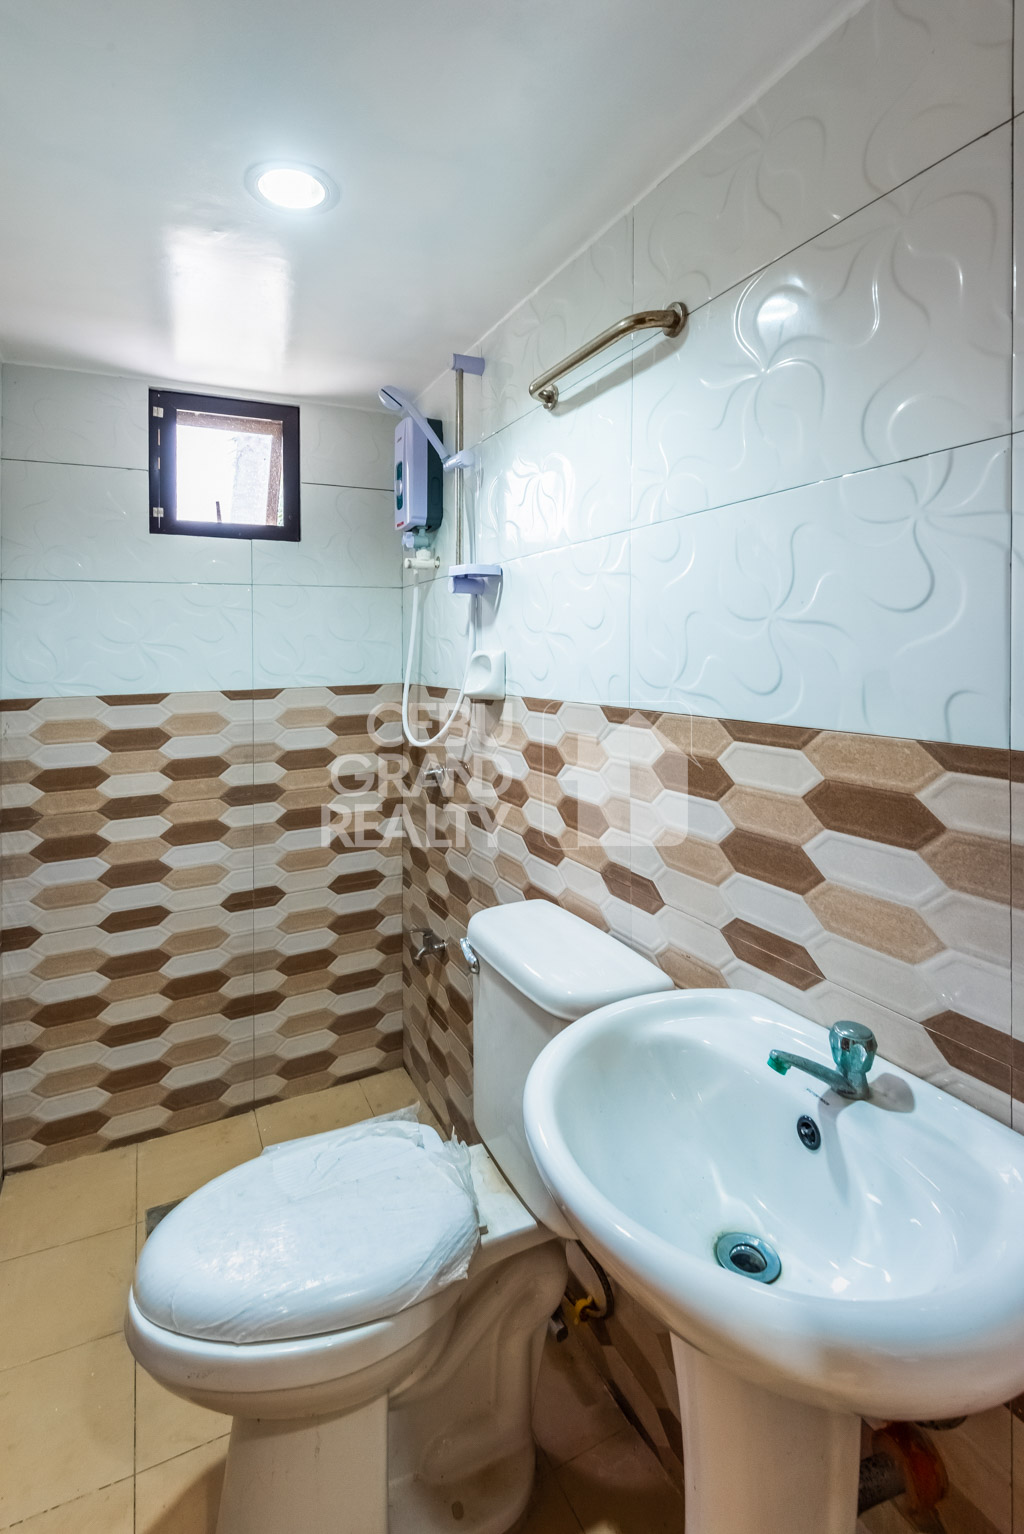 RHSJ2 Semi-Furnished 3 Bedroom Duplex for Rent in Talamban - 10